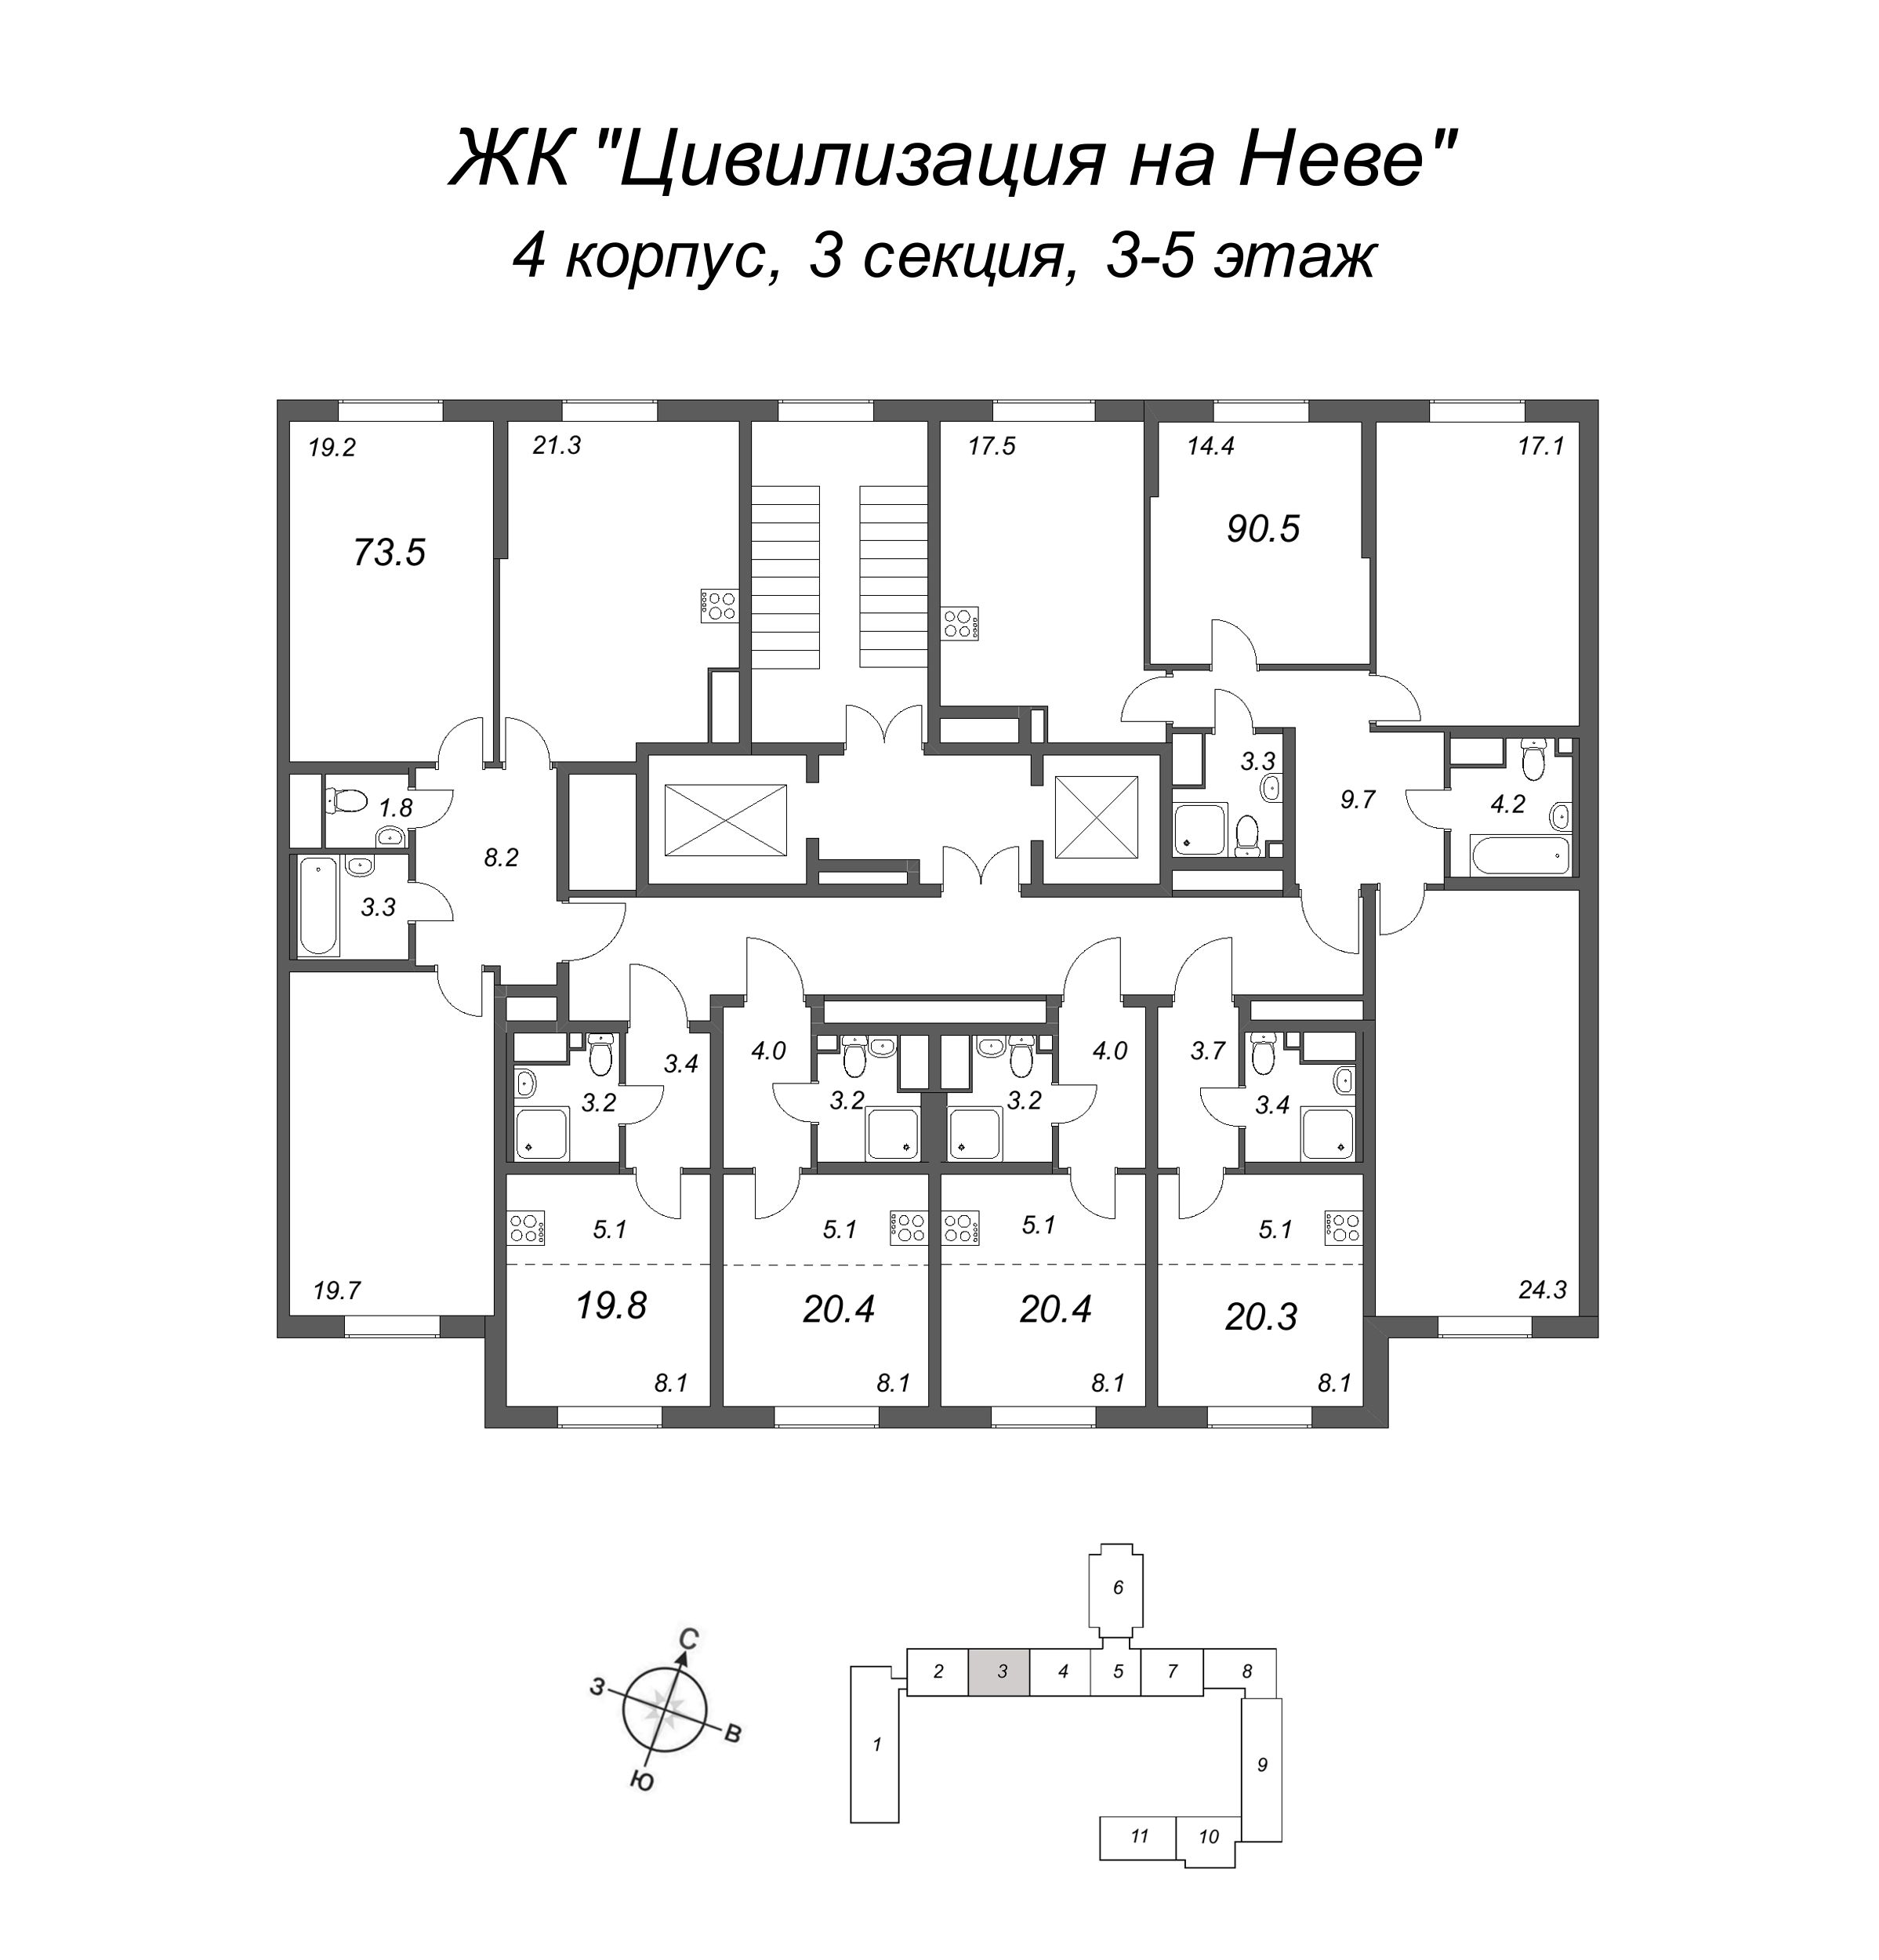 4-комнатная (Евро) квартира, 90.5 м² в ЖК "Цивилизация на Неве" - планировка этажа